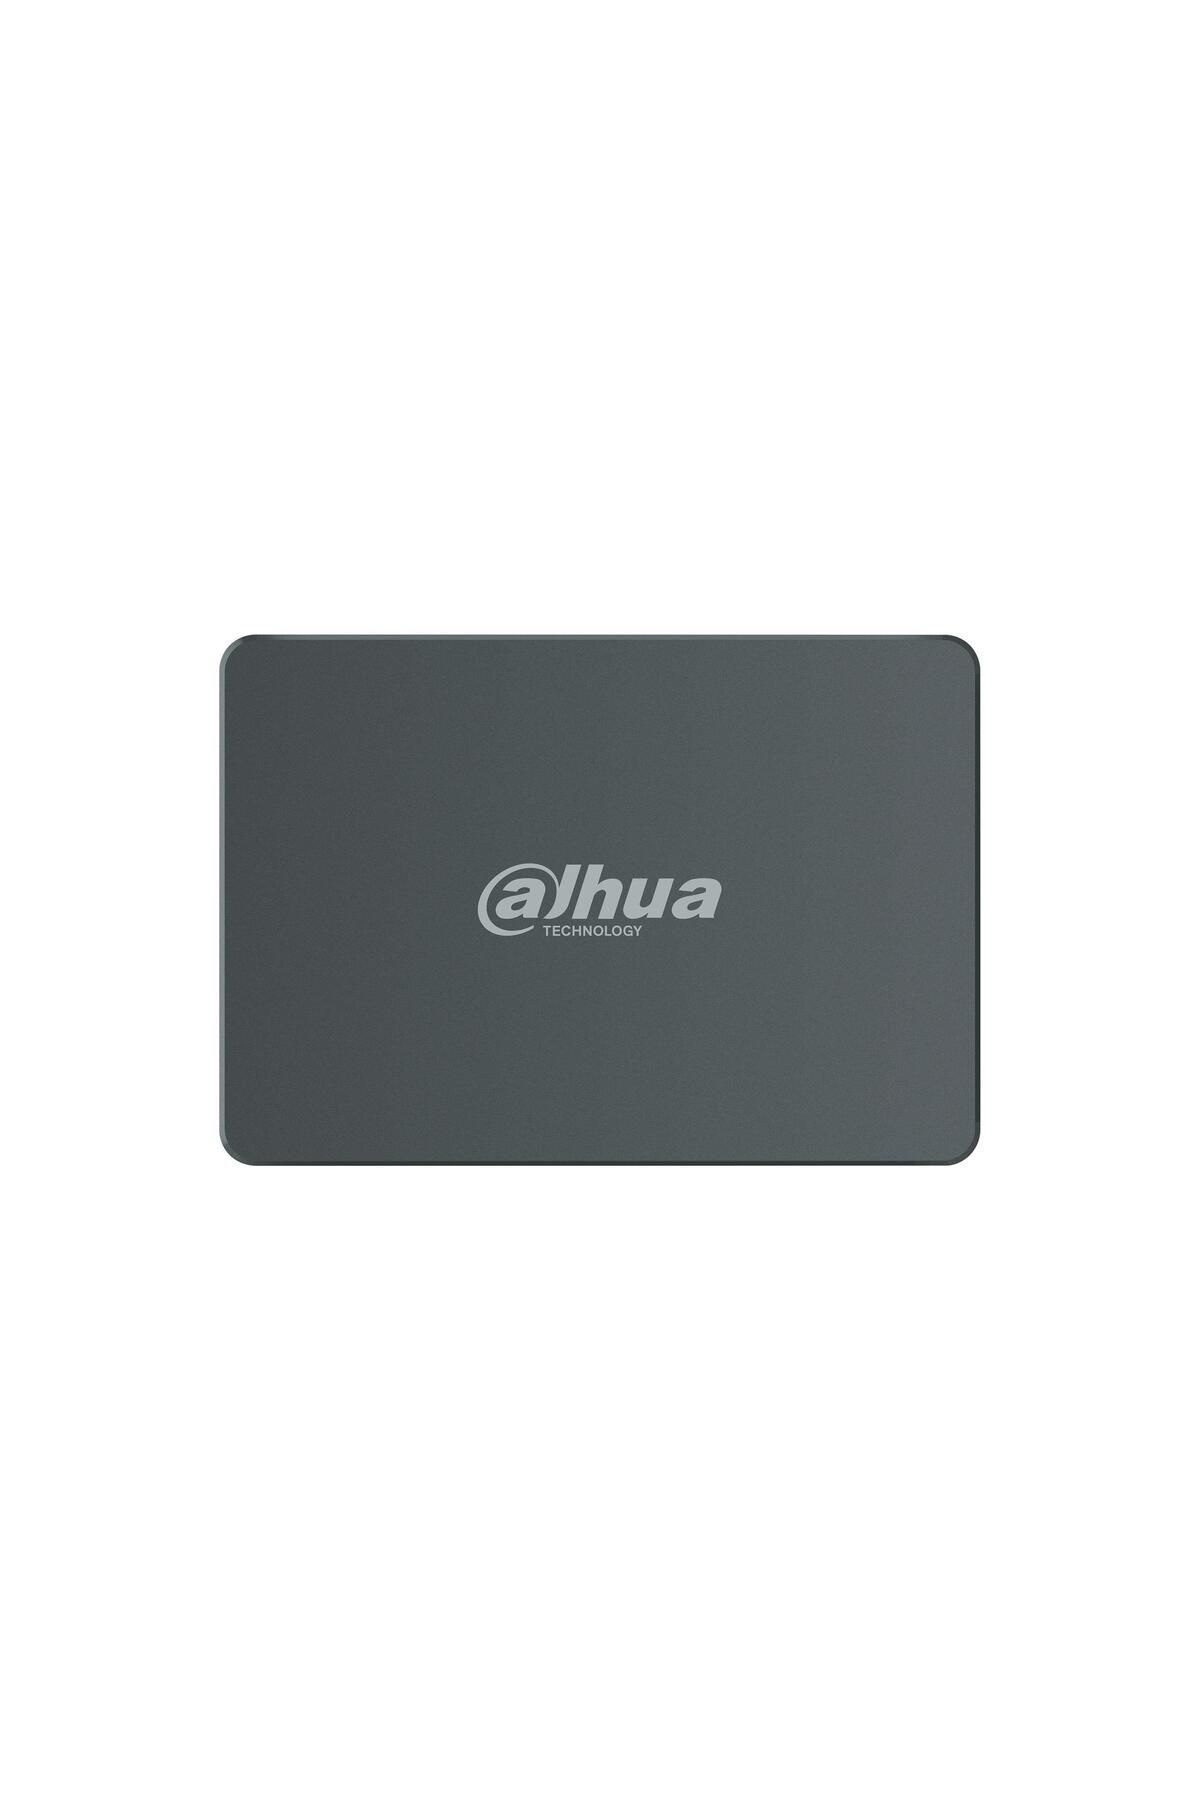 Dahua C800a Sata3 550/460mbs 2.5 256gb (SSD-C800AS256G)